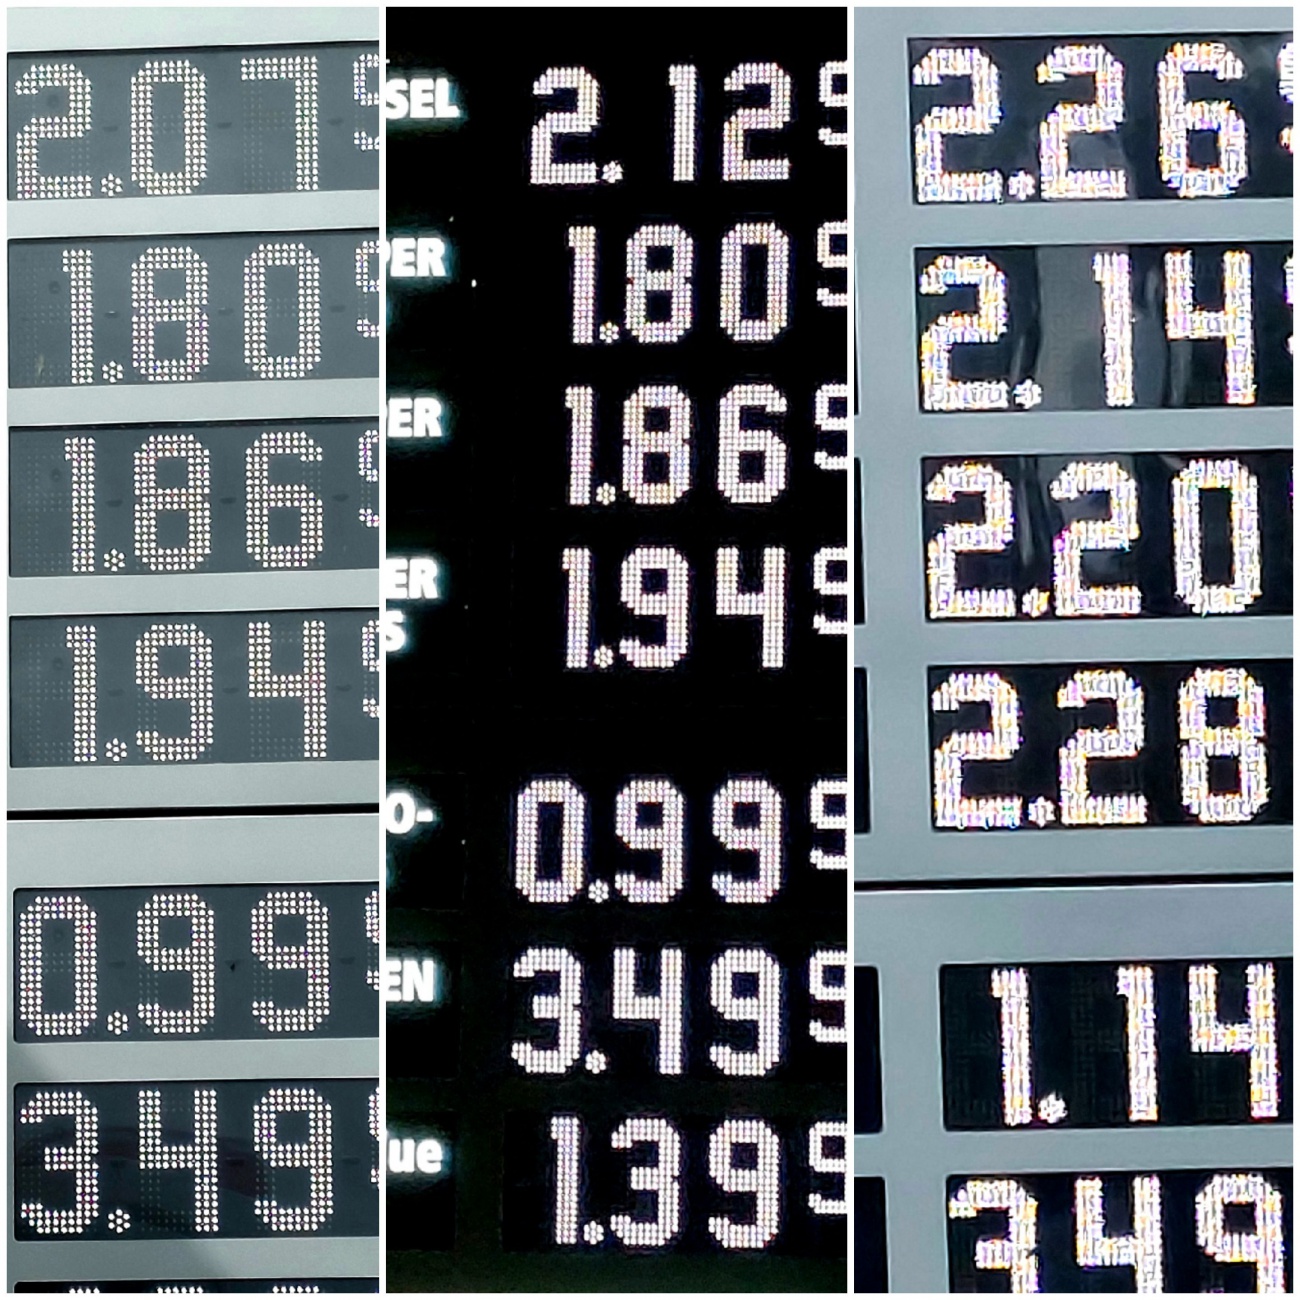 Foto: Martin Zehrer - 1. September 2022 - rechtes Bild zeigt die Preise am 1. September 2022...<br />
Über Nacht stiegen die Kosten für Diesel um 14 Cent und für Super-Benzin um 34 Cent.<br />
Die Ansch 